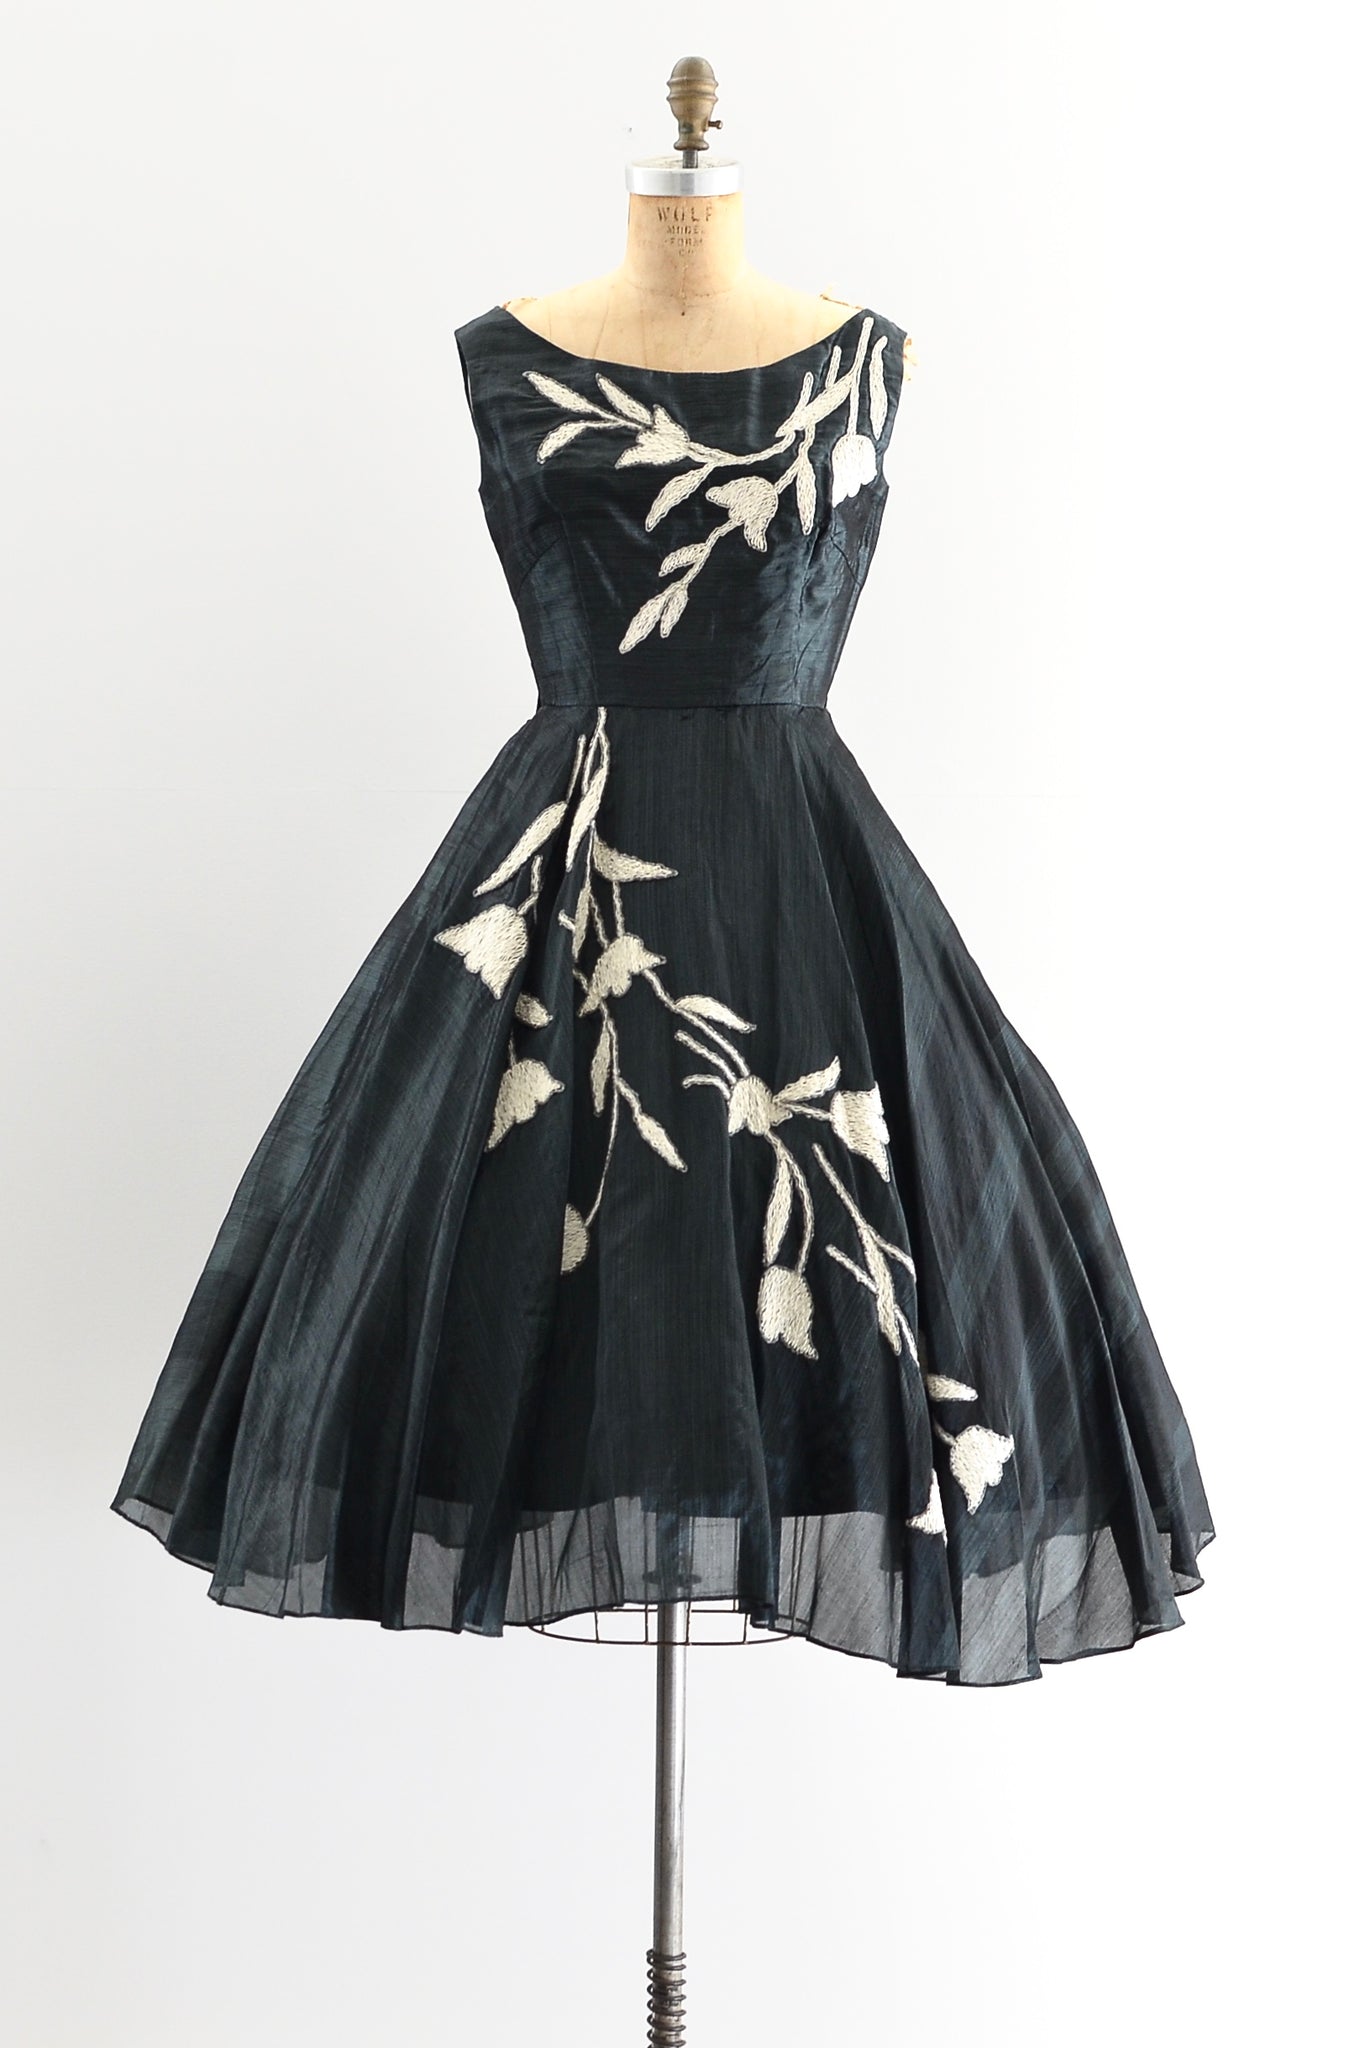 Sharkskin Silk Dress - Pickled Vintage